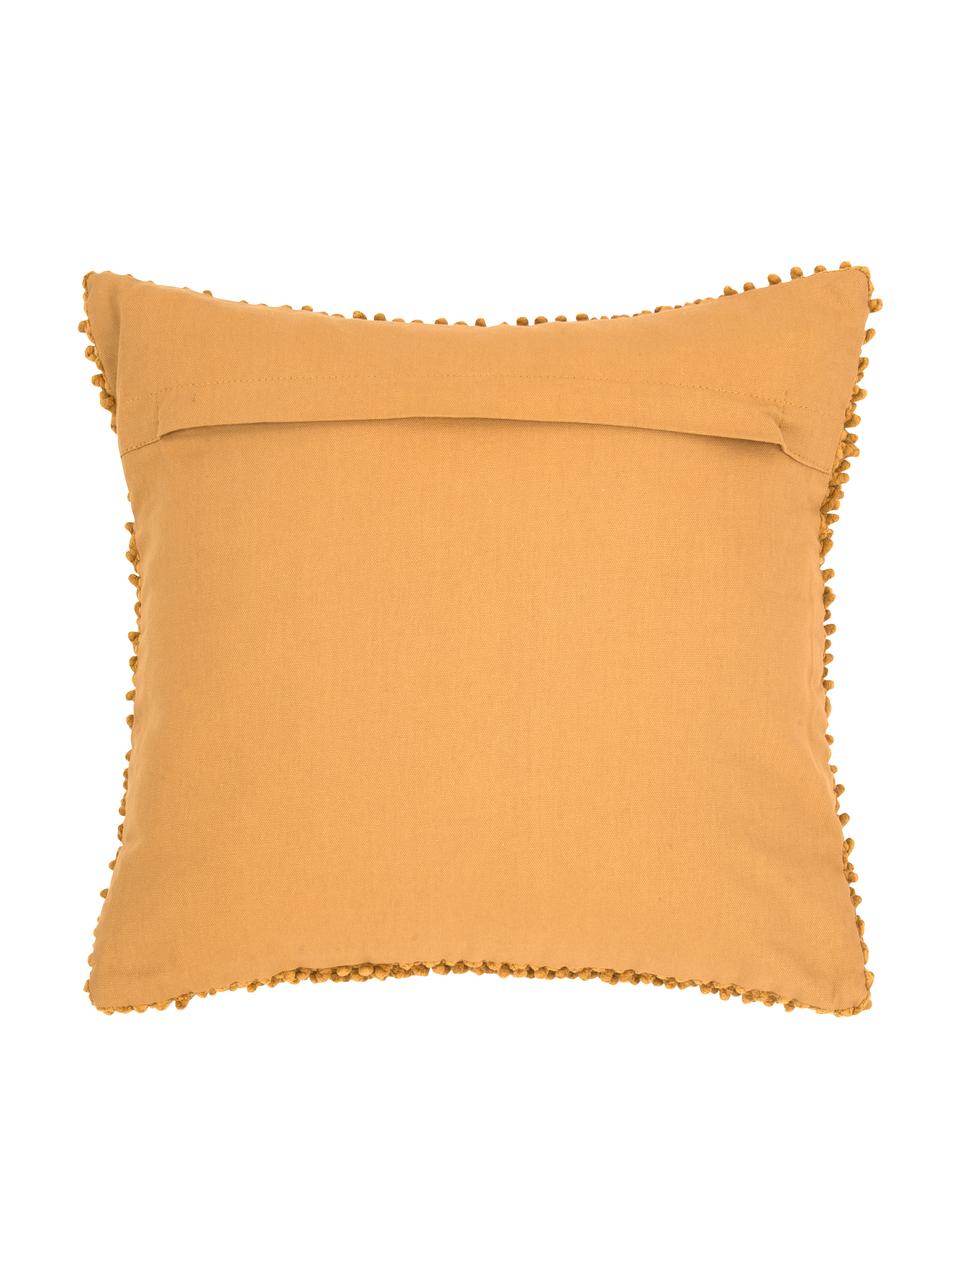 Poszewka na poduszkę ze strukturalną powierzchnią Indi, 100% bawełna, Żółty, S 45 x D 45 cm